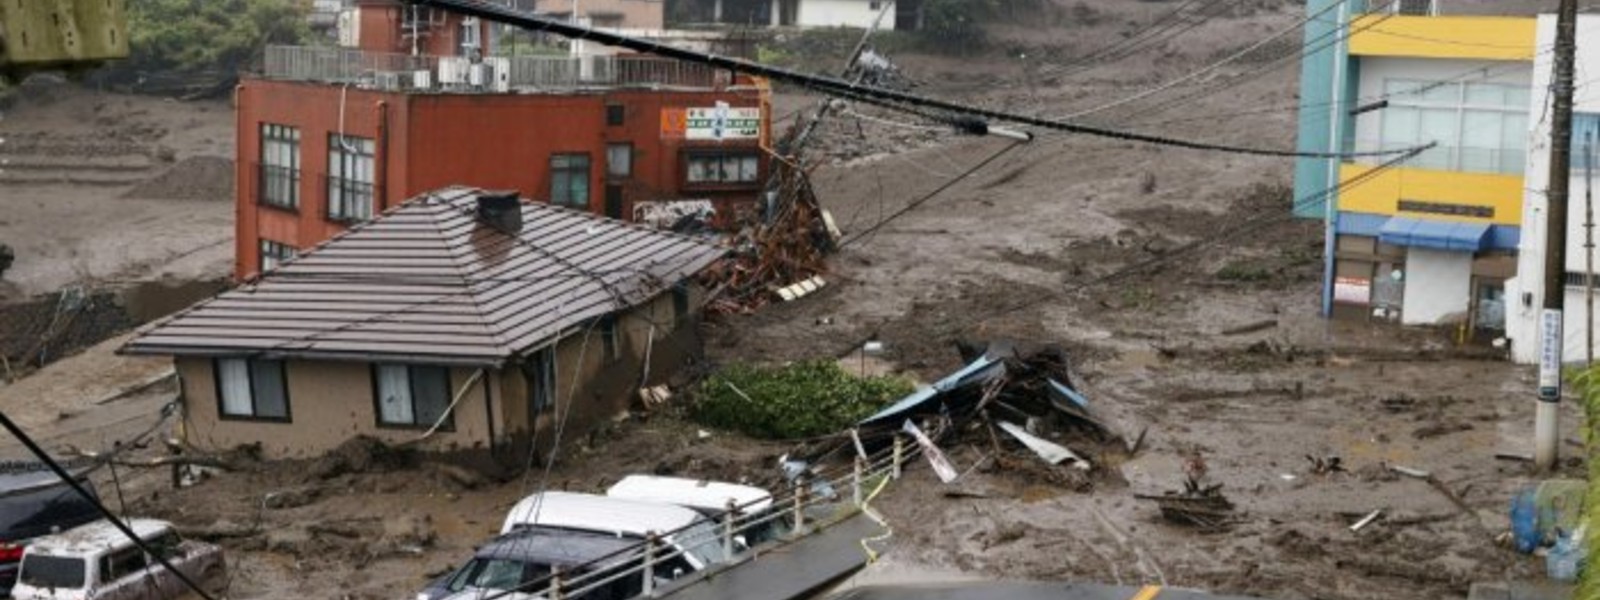 20 missing as mudslide west of Tokyo hits houses